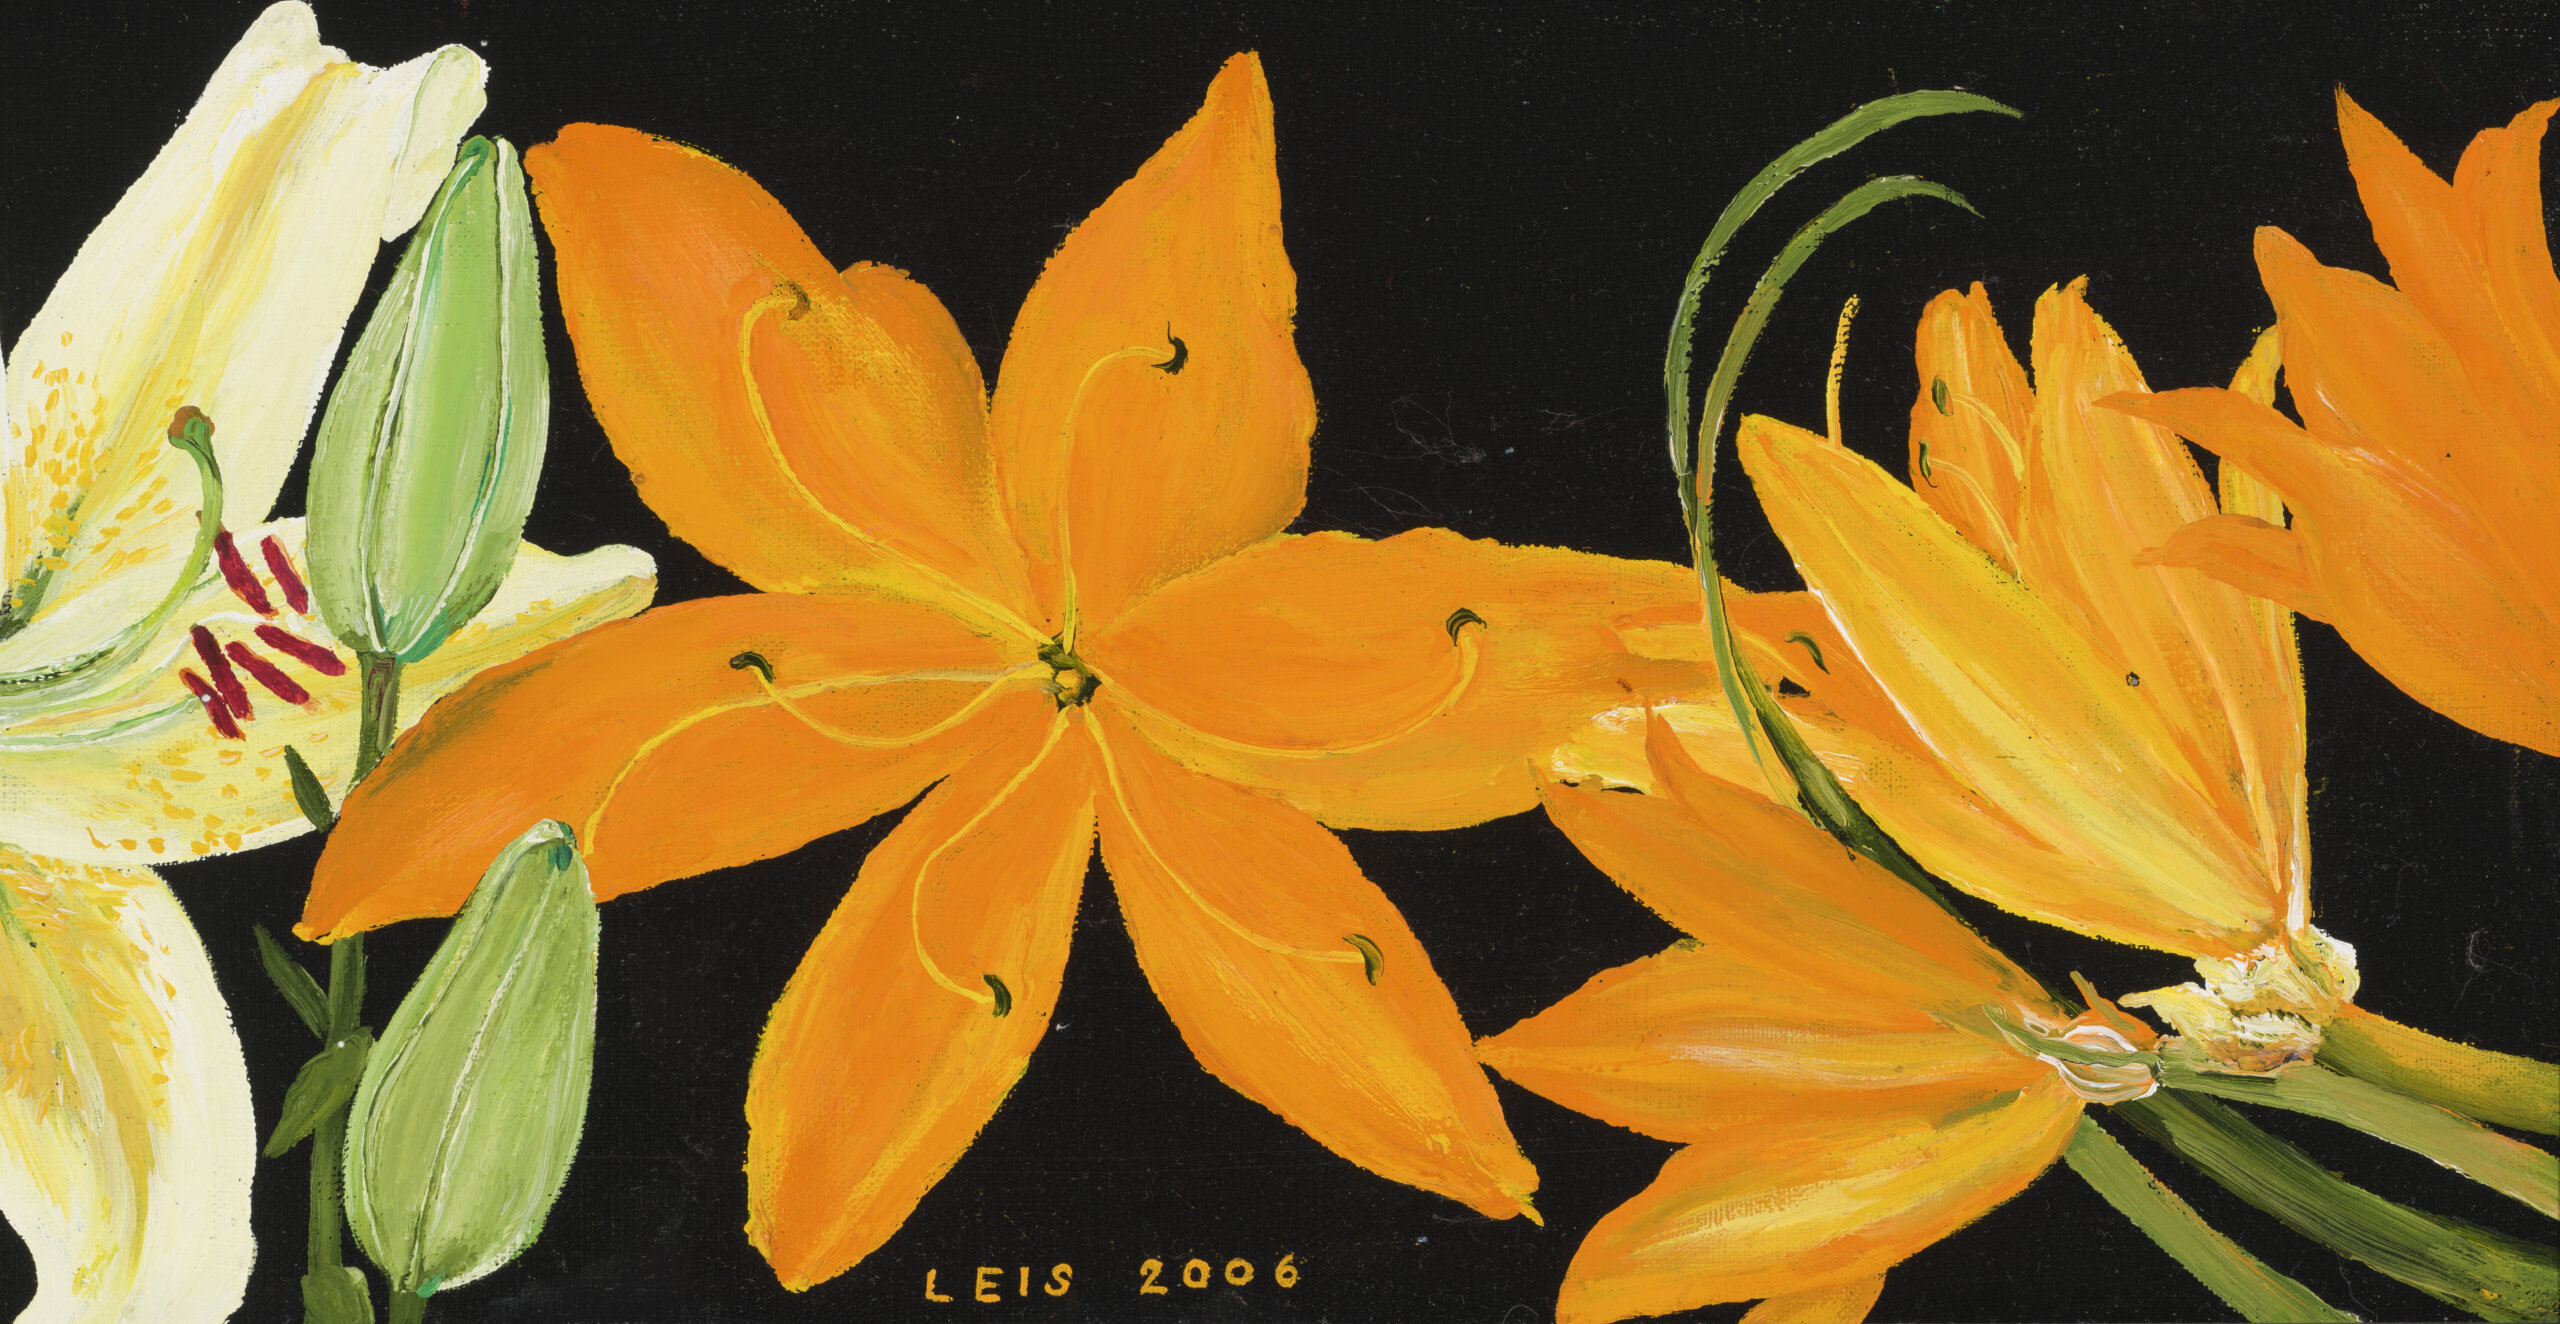 Malle Leis “Leekivad liiliad”, 2006. 26 x 100,2 cm.